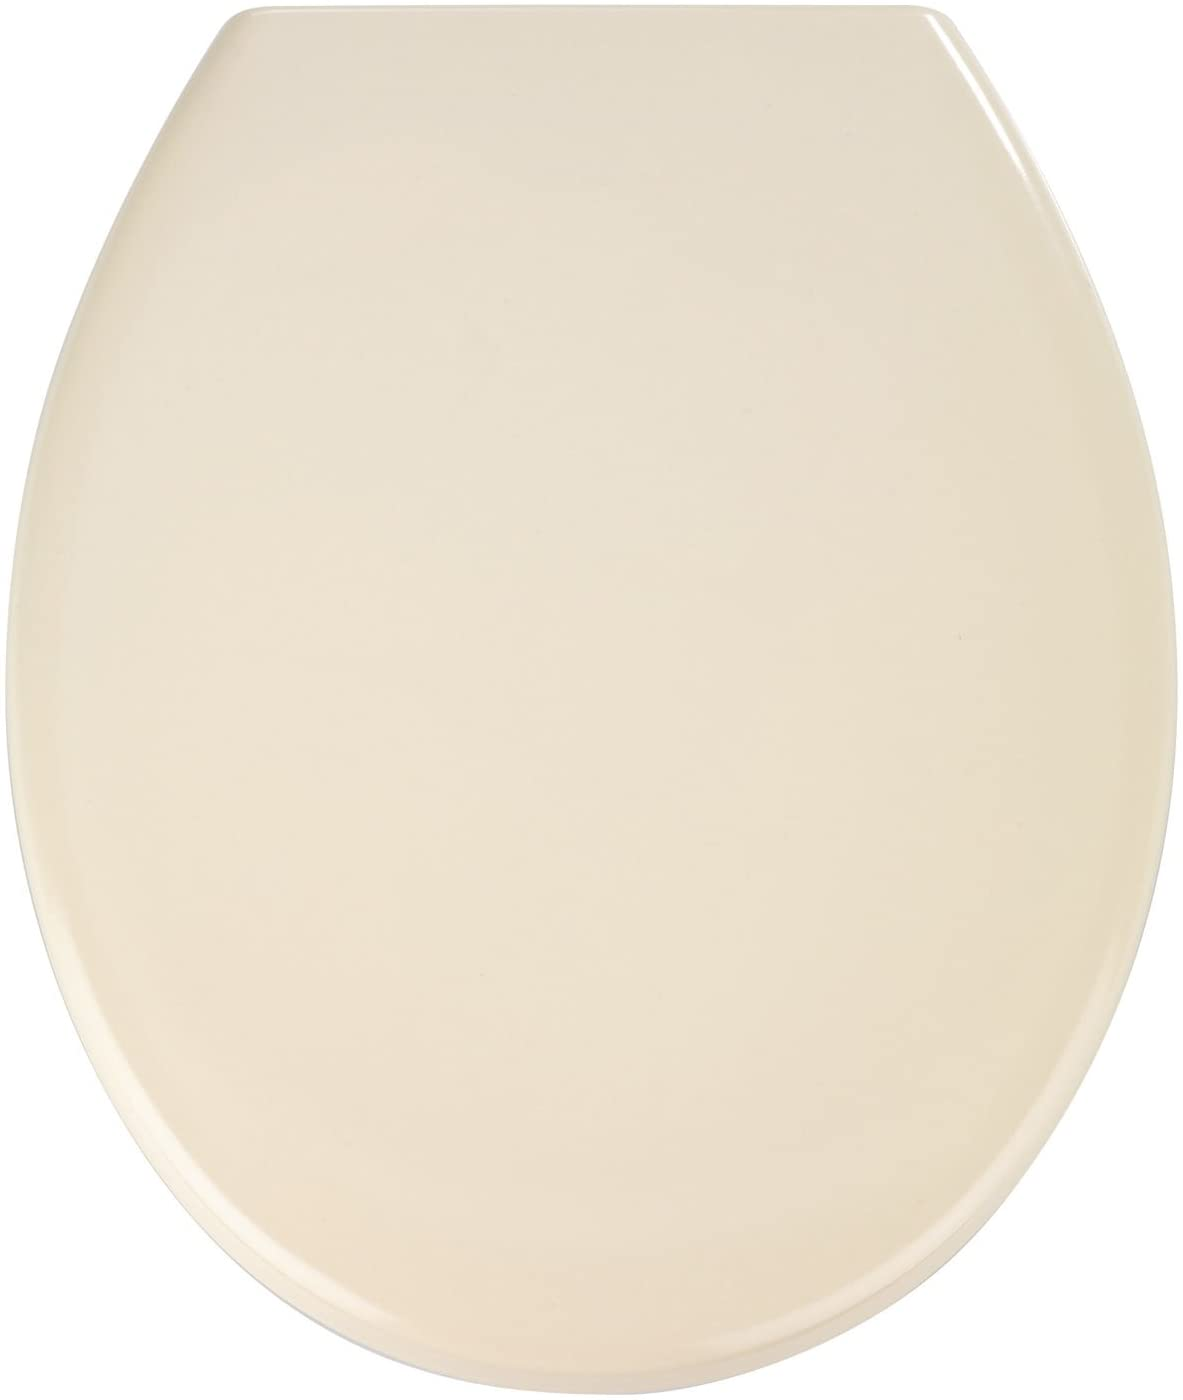 Premium WC-Sitz Ottana (Farbe: beige)